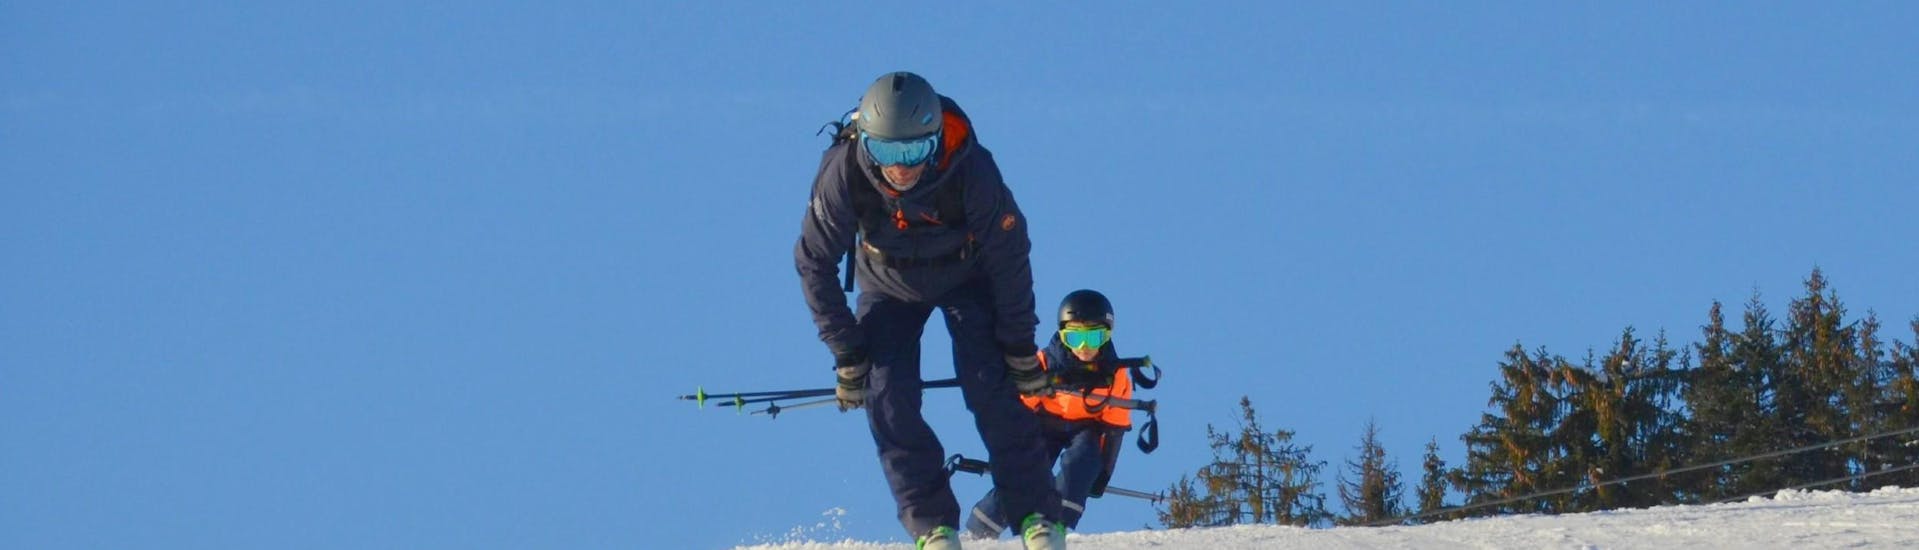 Clases de esquí privadas para niños a partir de 4 años para todos los niveles con Ski Sports School Mountainmind Söll.